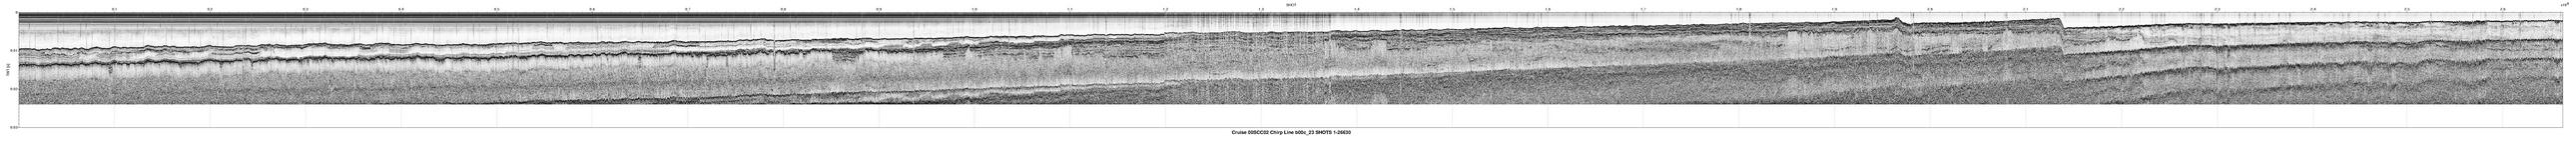 00SCC02 b00c_23 seismic profile image